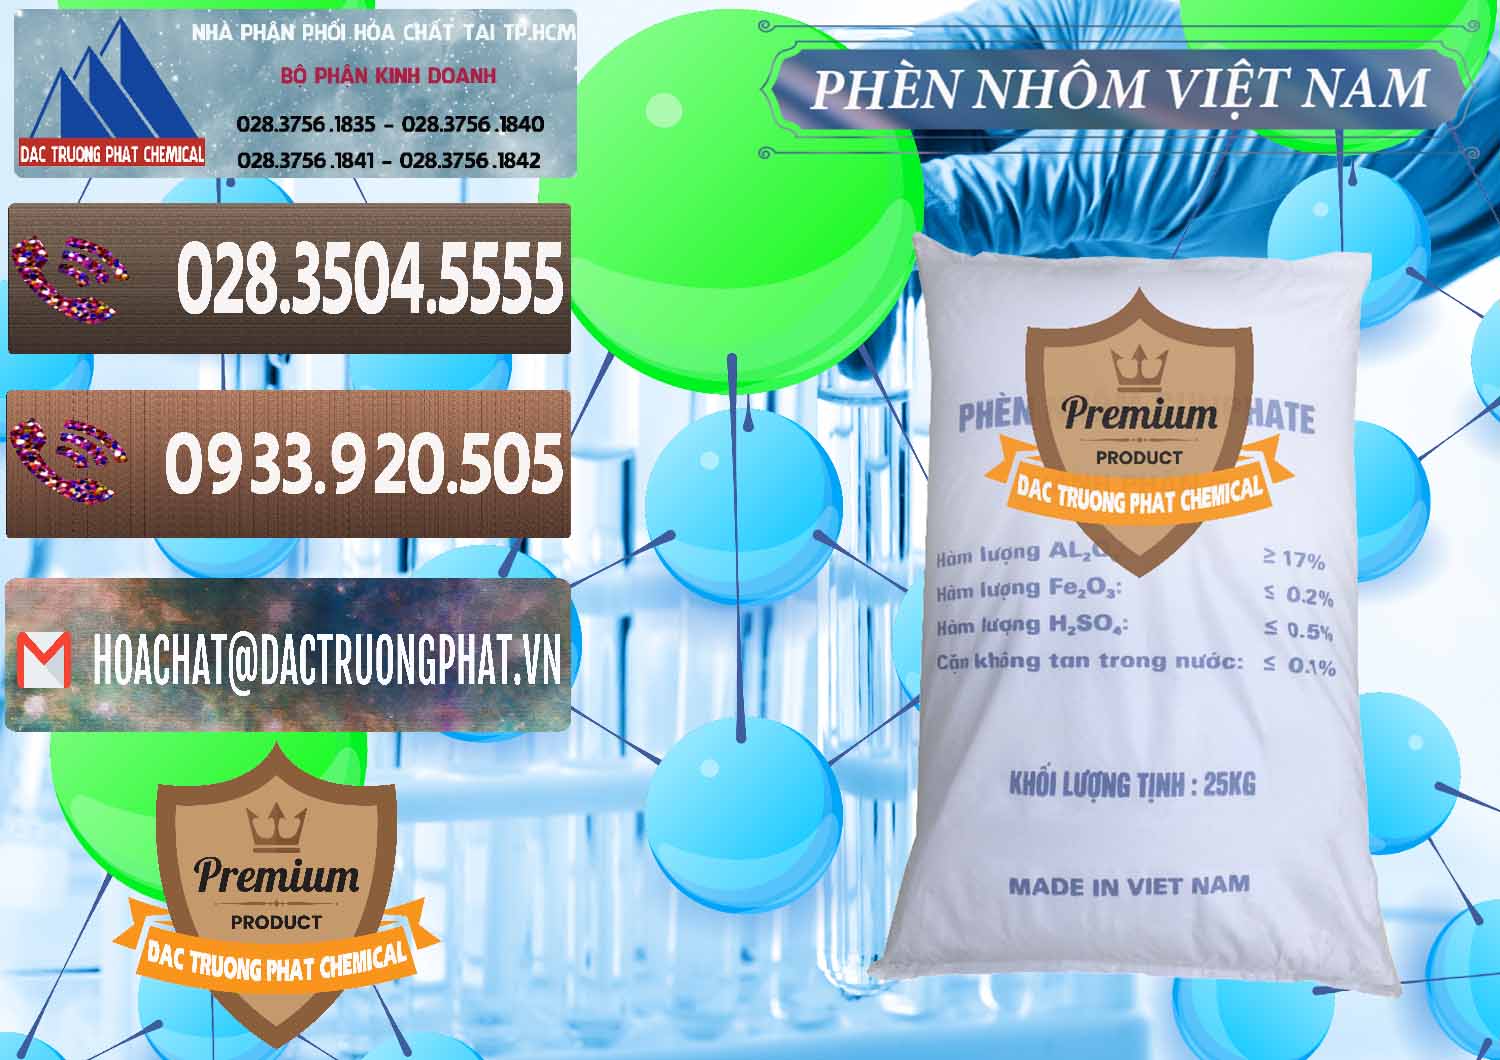 Cty cung cấp và bán Phèn Nhôm - Al2(SO4)3 17% Việt Nam - 0465 - Cty chuyên kinh doanh - phân phối hóa chất tại TP.HCM - hoachatviet.net